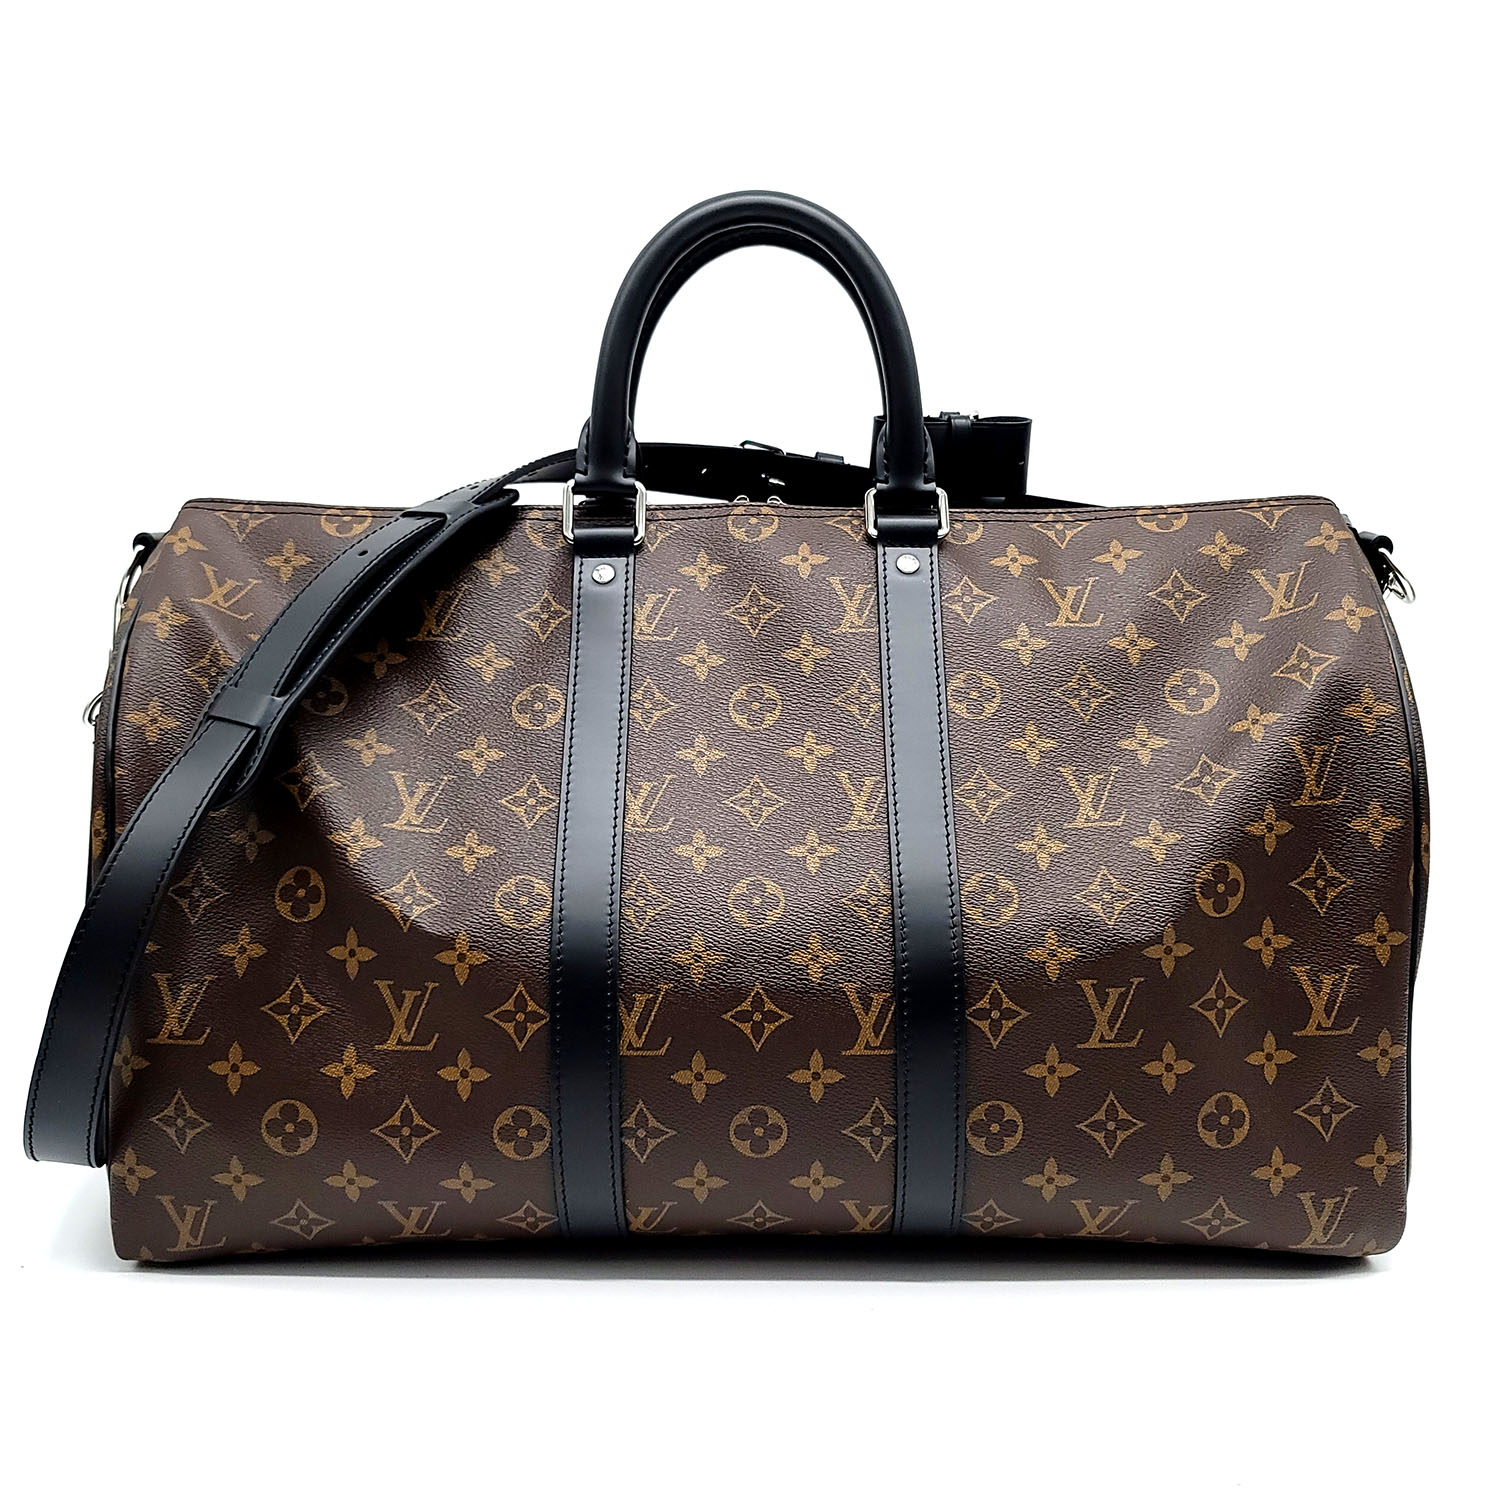 Louis Vuitton Macassar Monogram Keepall 45 Bandoulière Bag